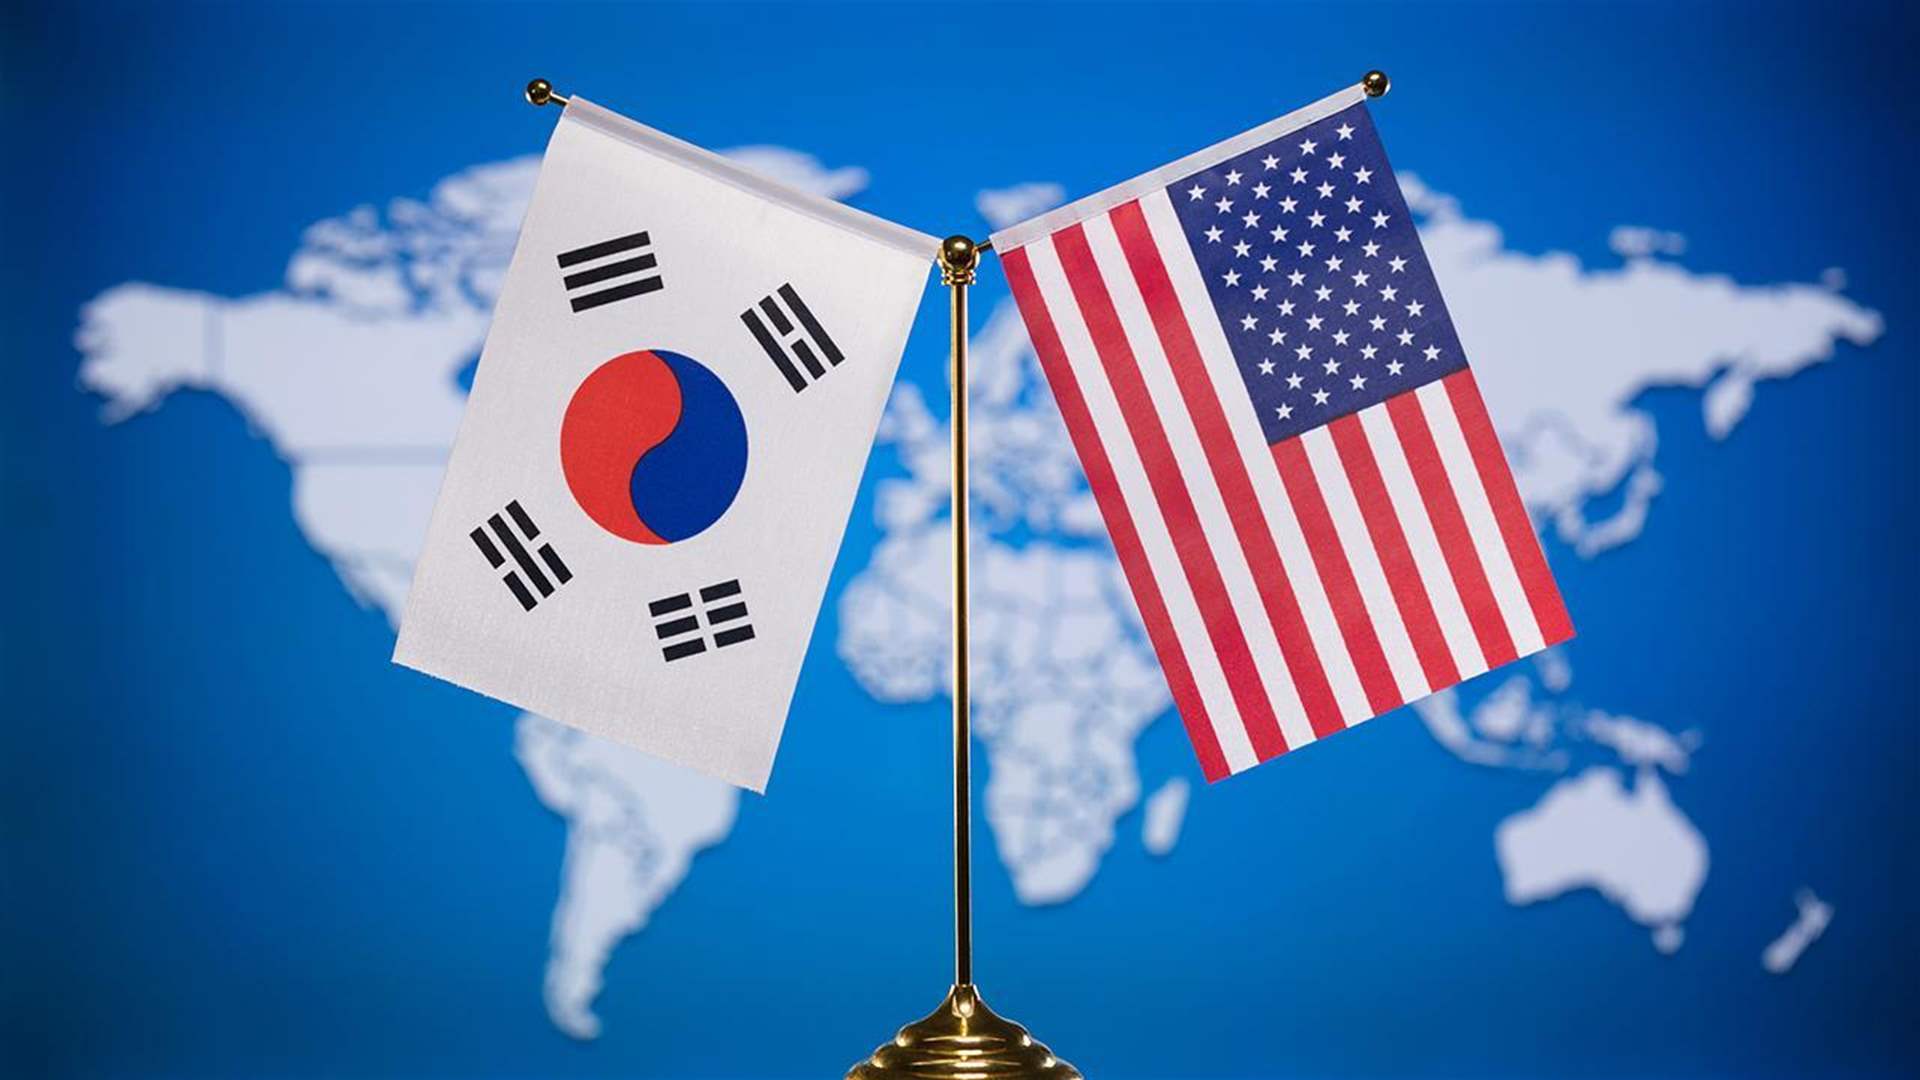 كوريا الجنوبية والولايات المتحدة تستهلان تدريباتهما العسكرية الربيعية 